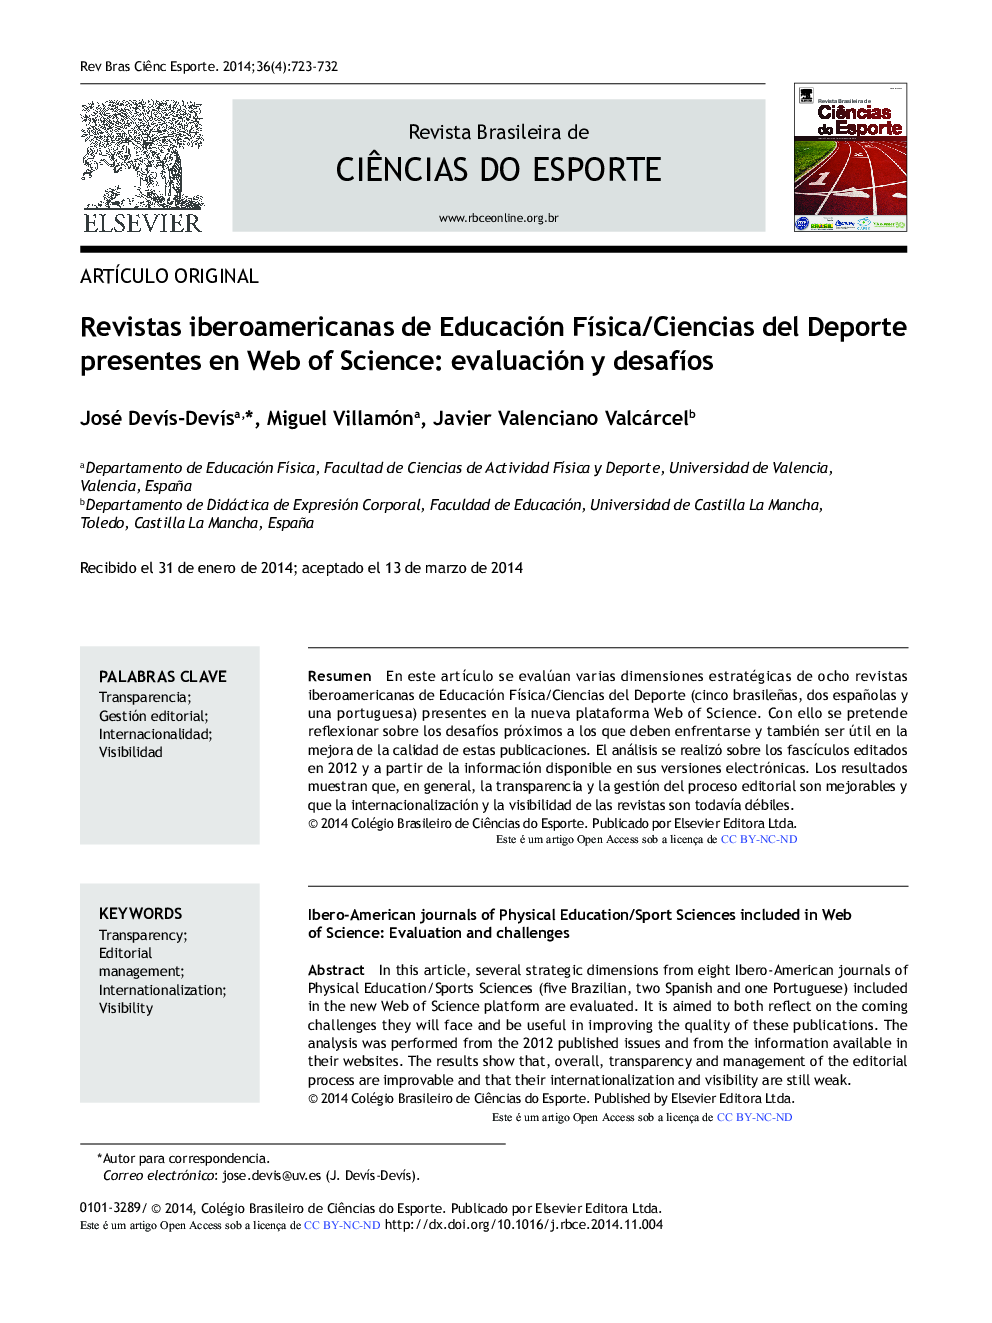 Revistas iberoamericanas de Educación Física/Ciencias del Deporte presentes en Web of Science: evaluación y desafíos